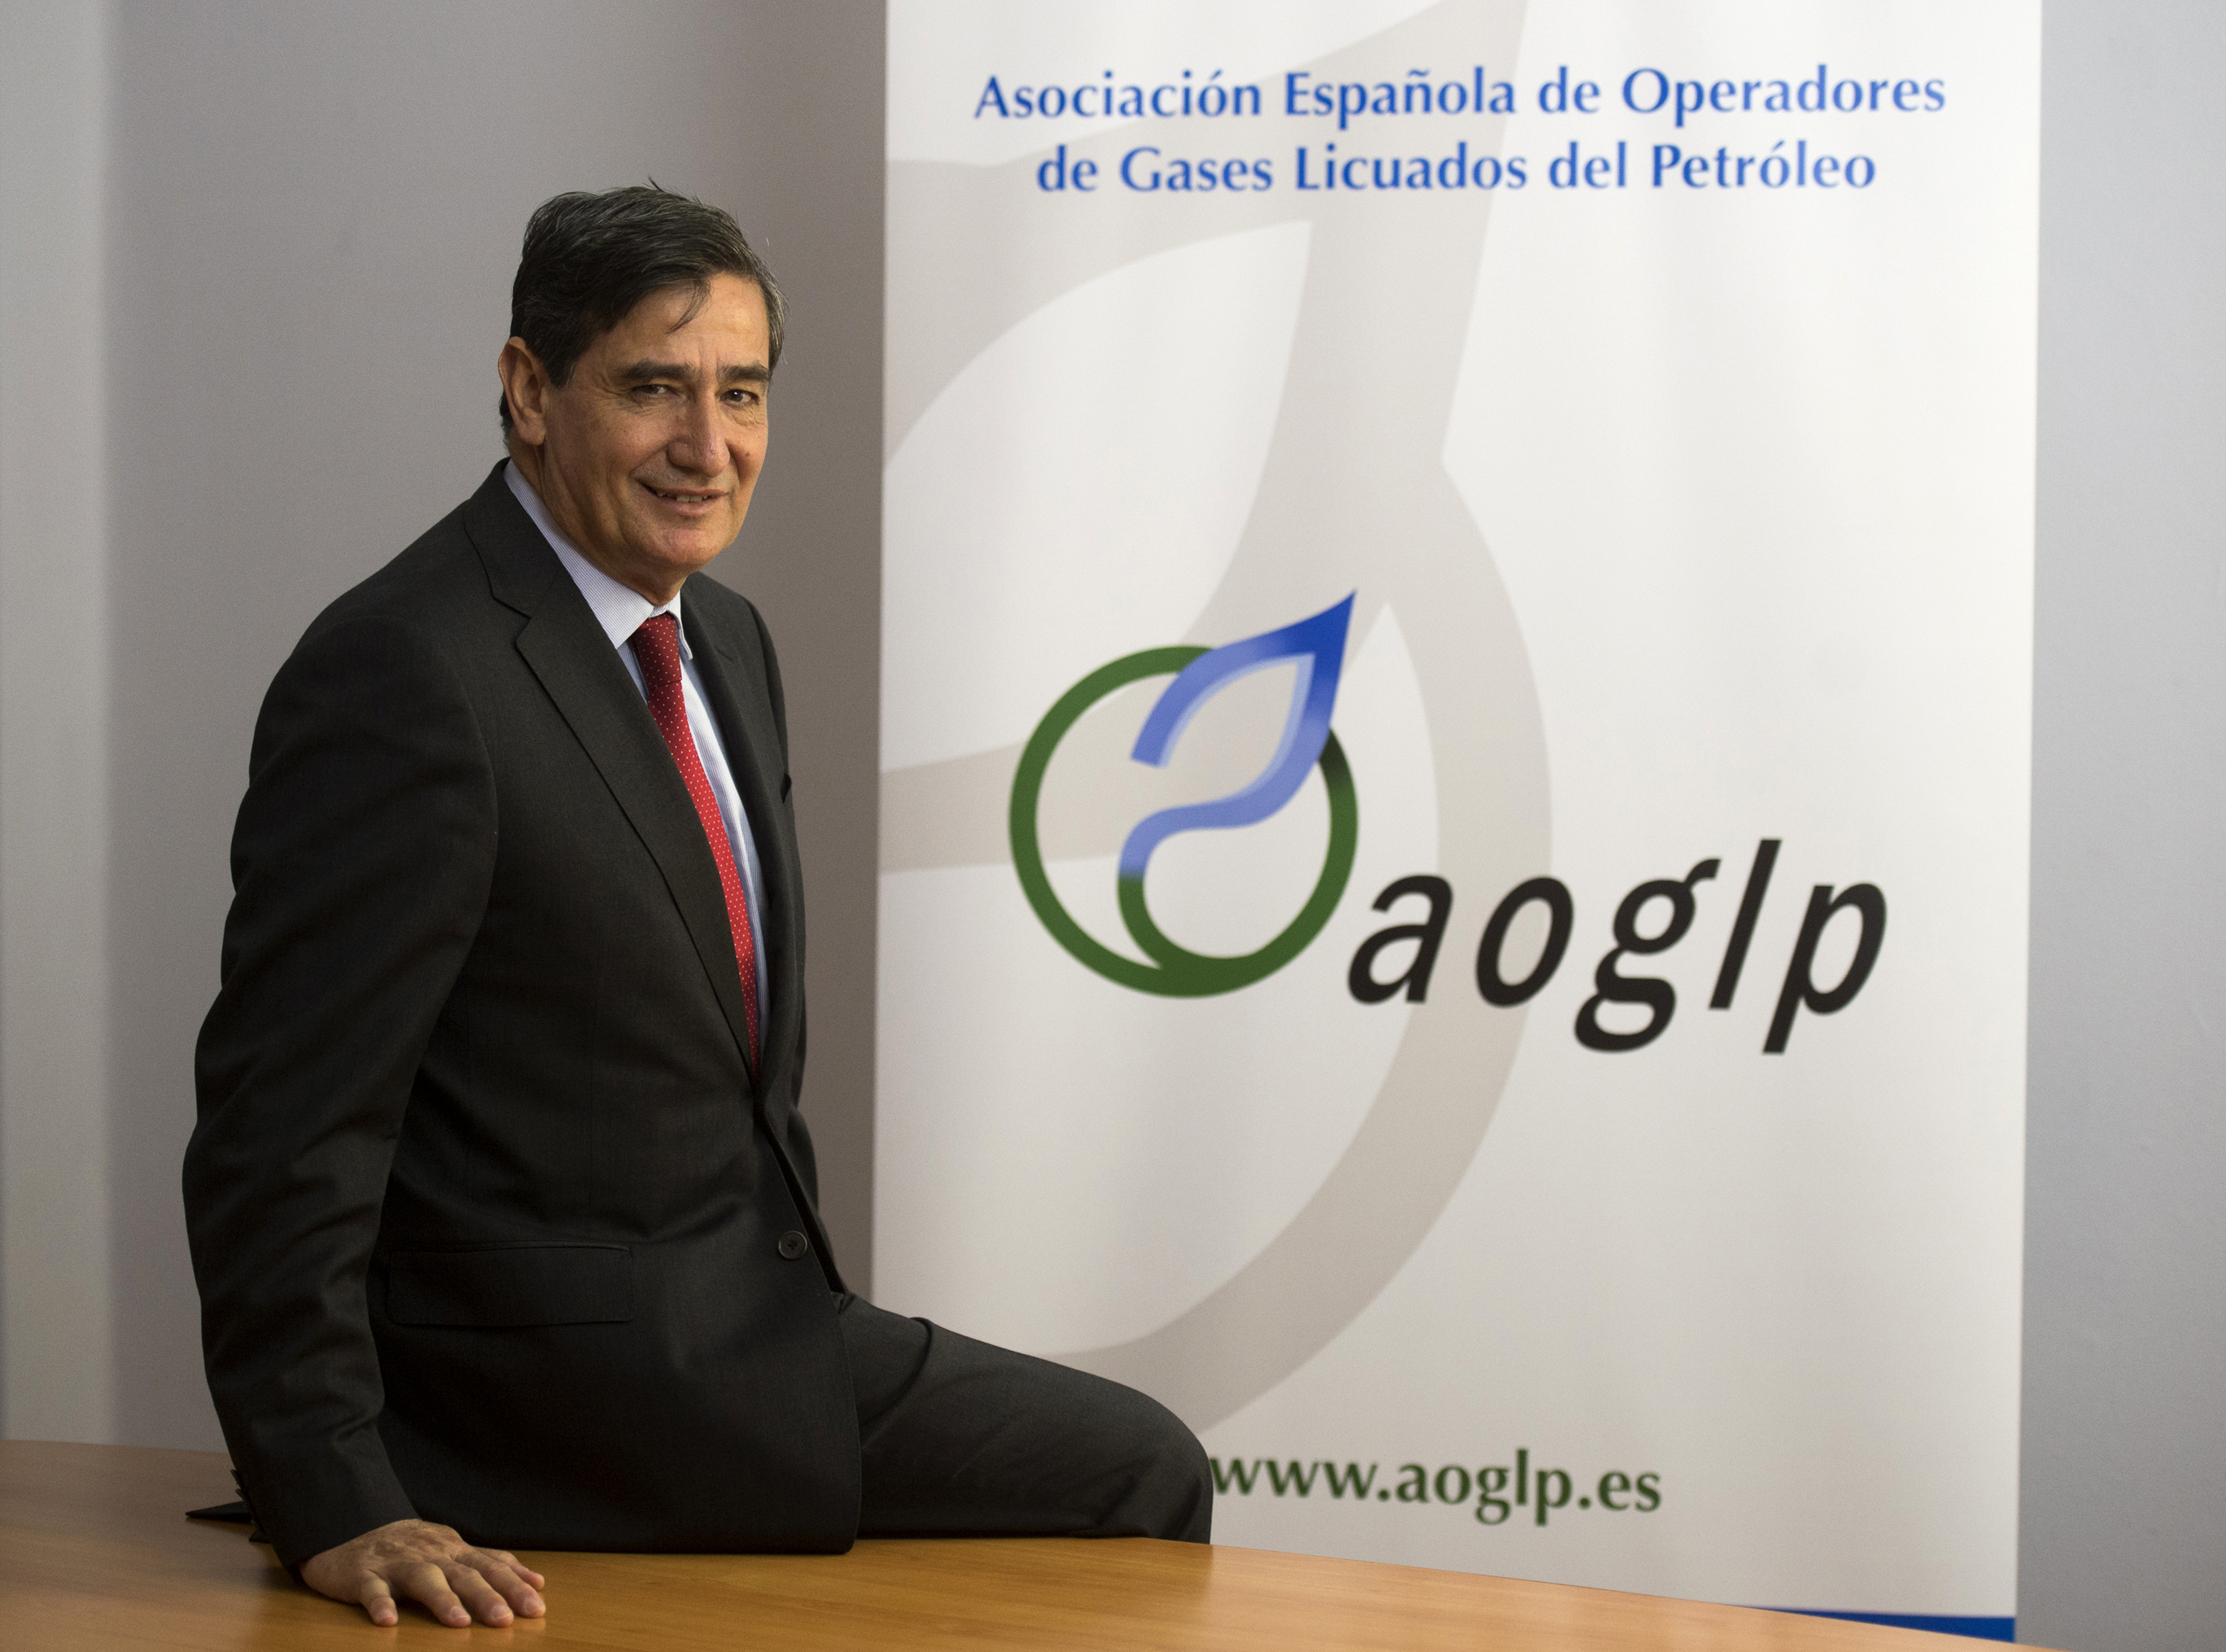 Santiago Prez es el director general de la AOGLP